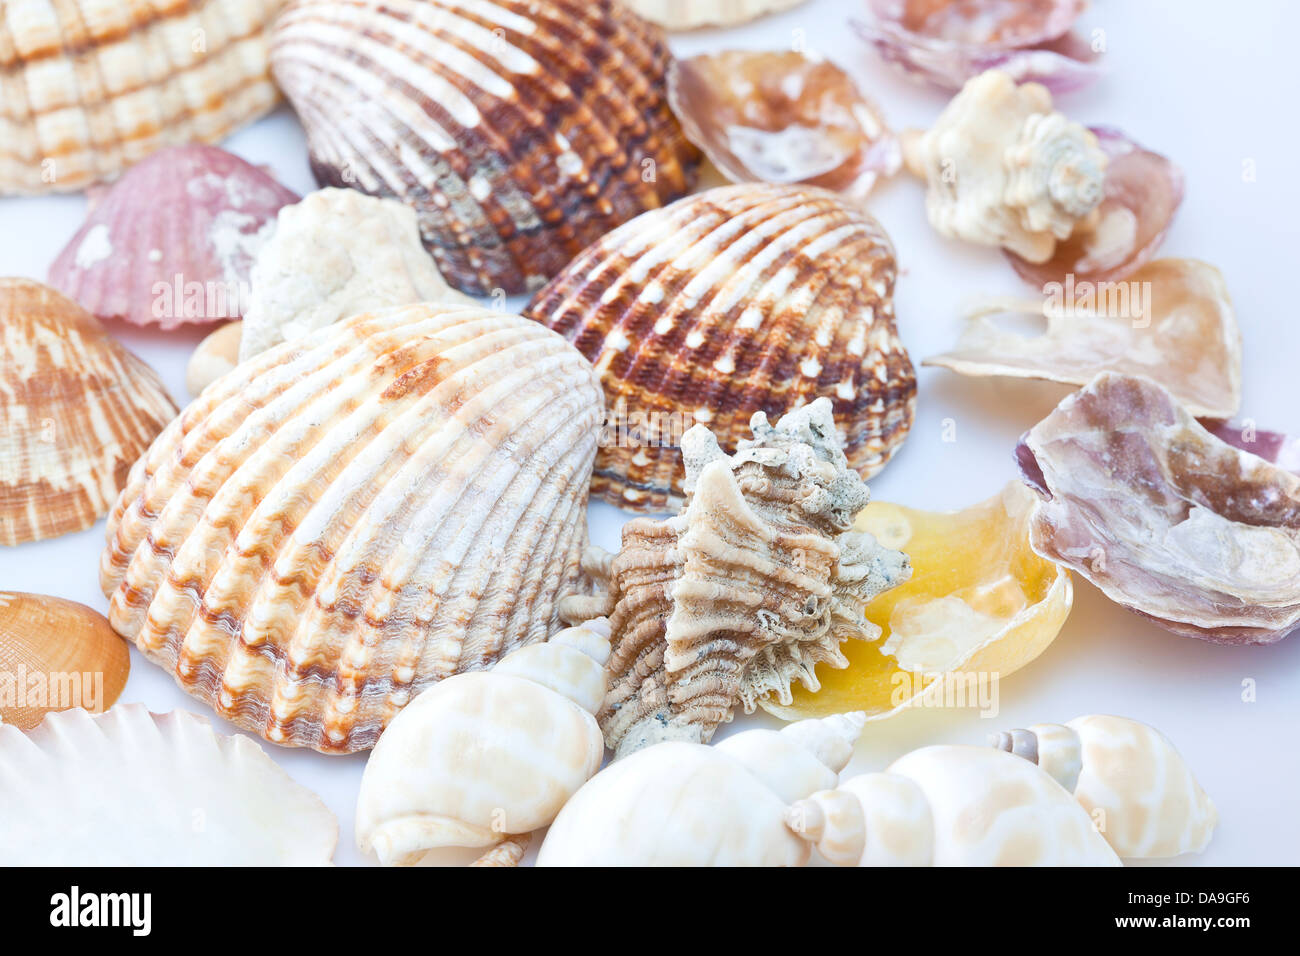 Variety of sea shells. Stock Photo